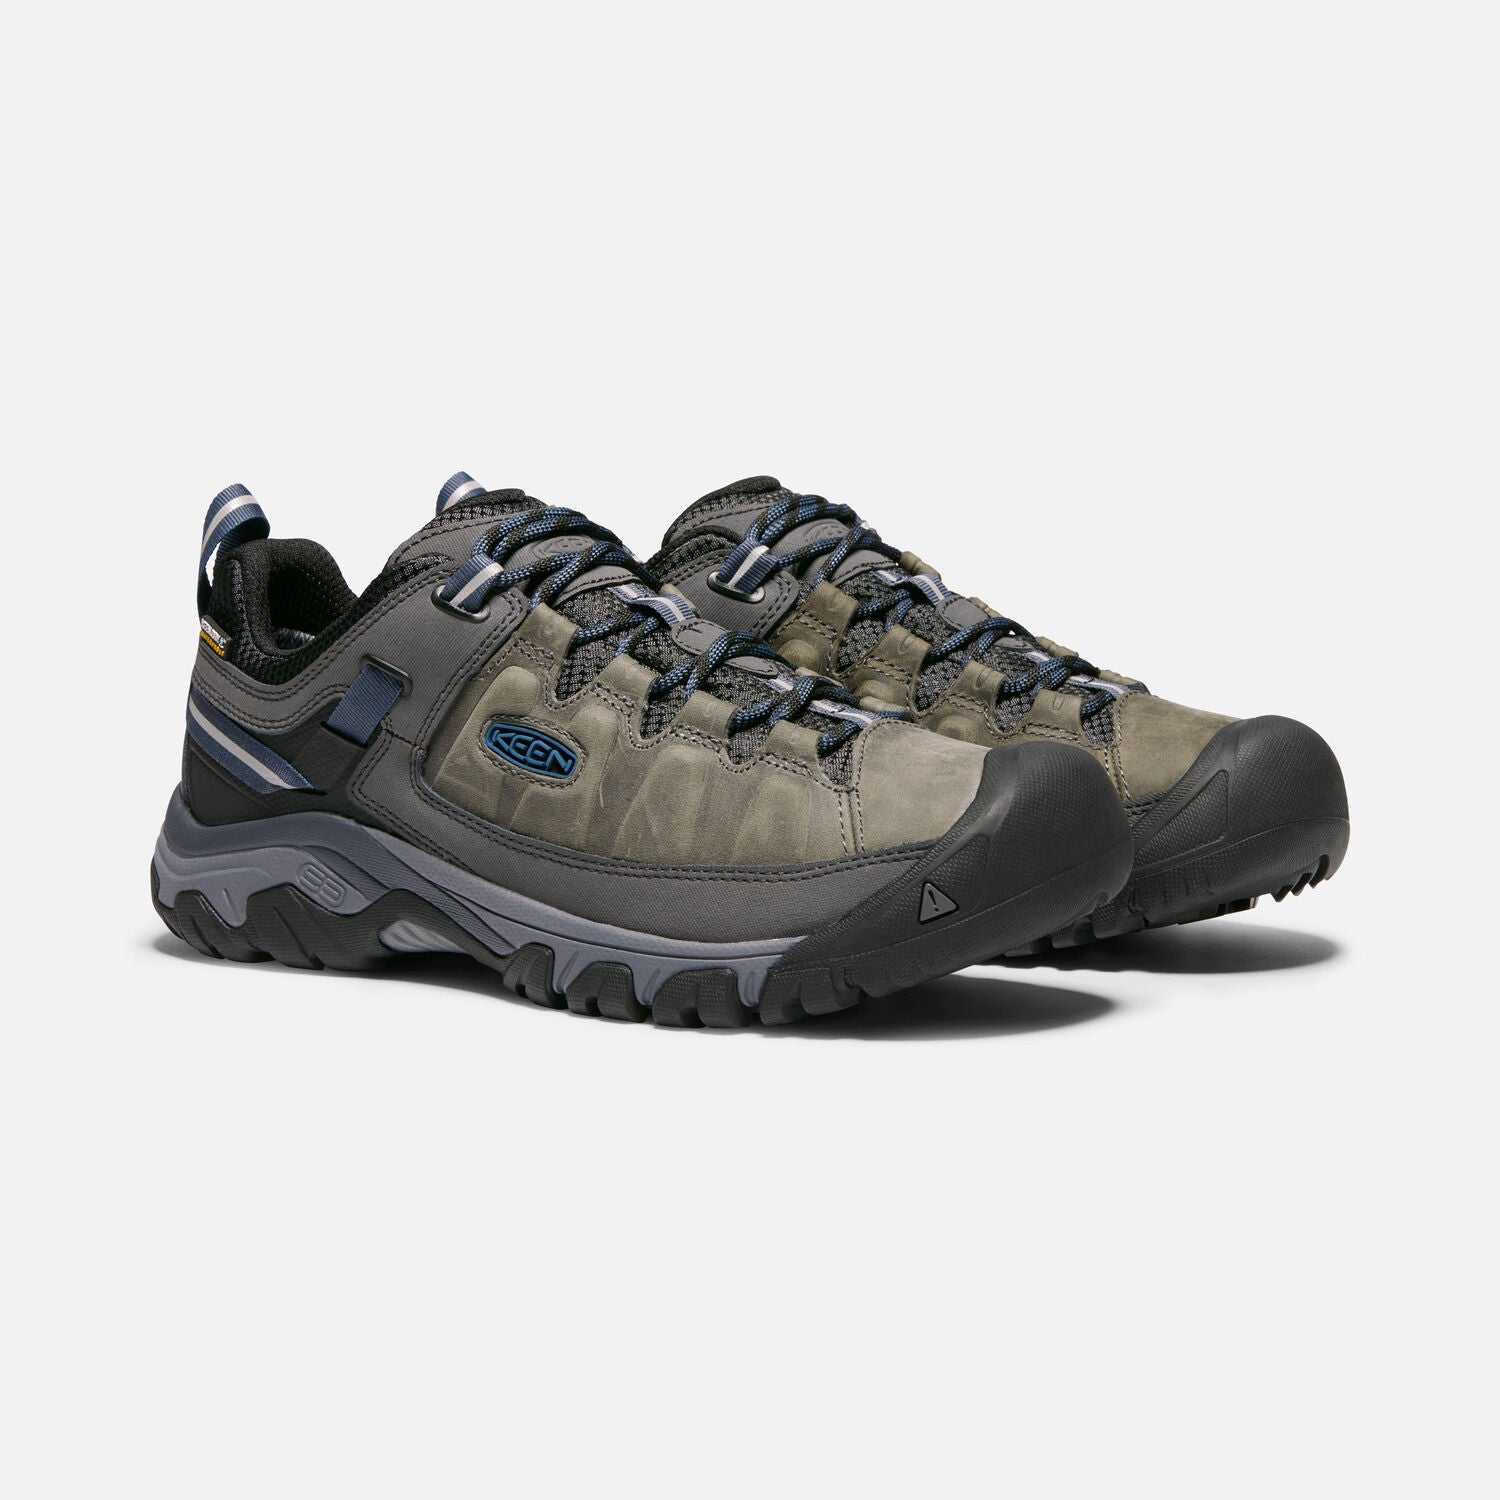 Targhee III Men's Waterproof Trail Shoe - Steel Grey/Captain's Blue